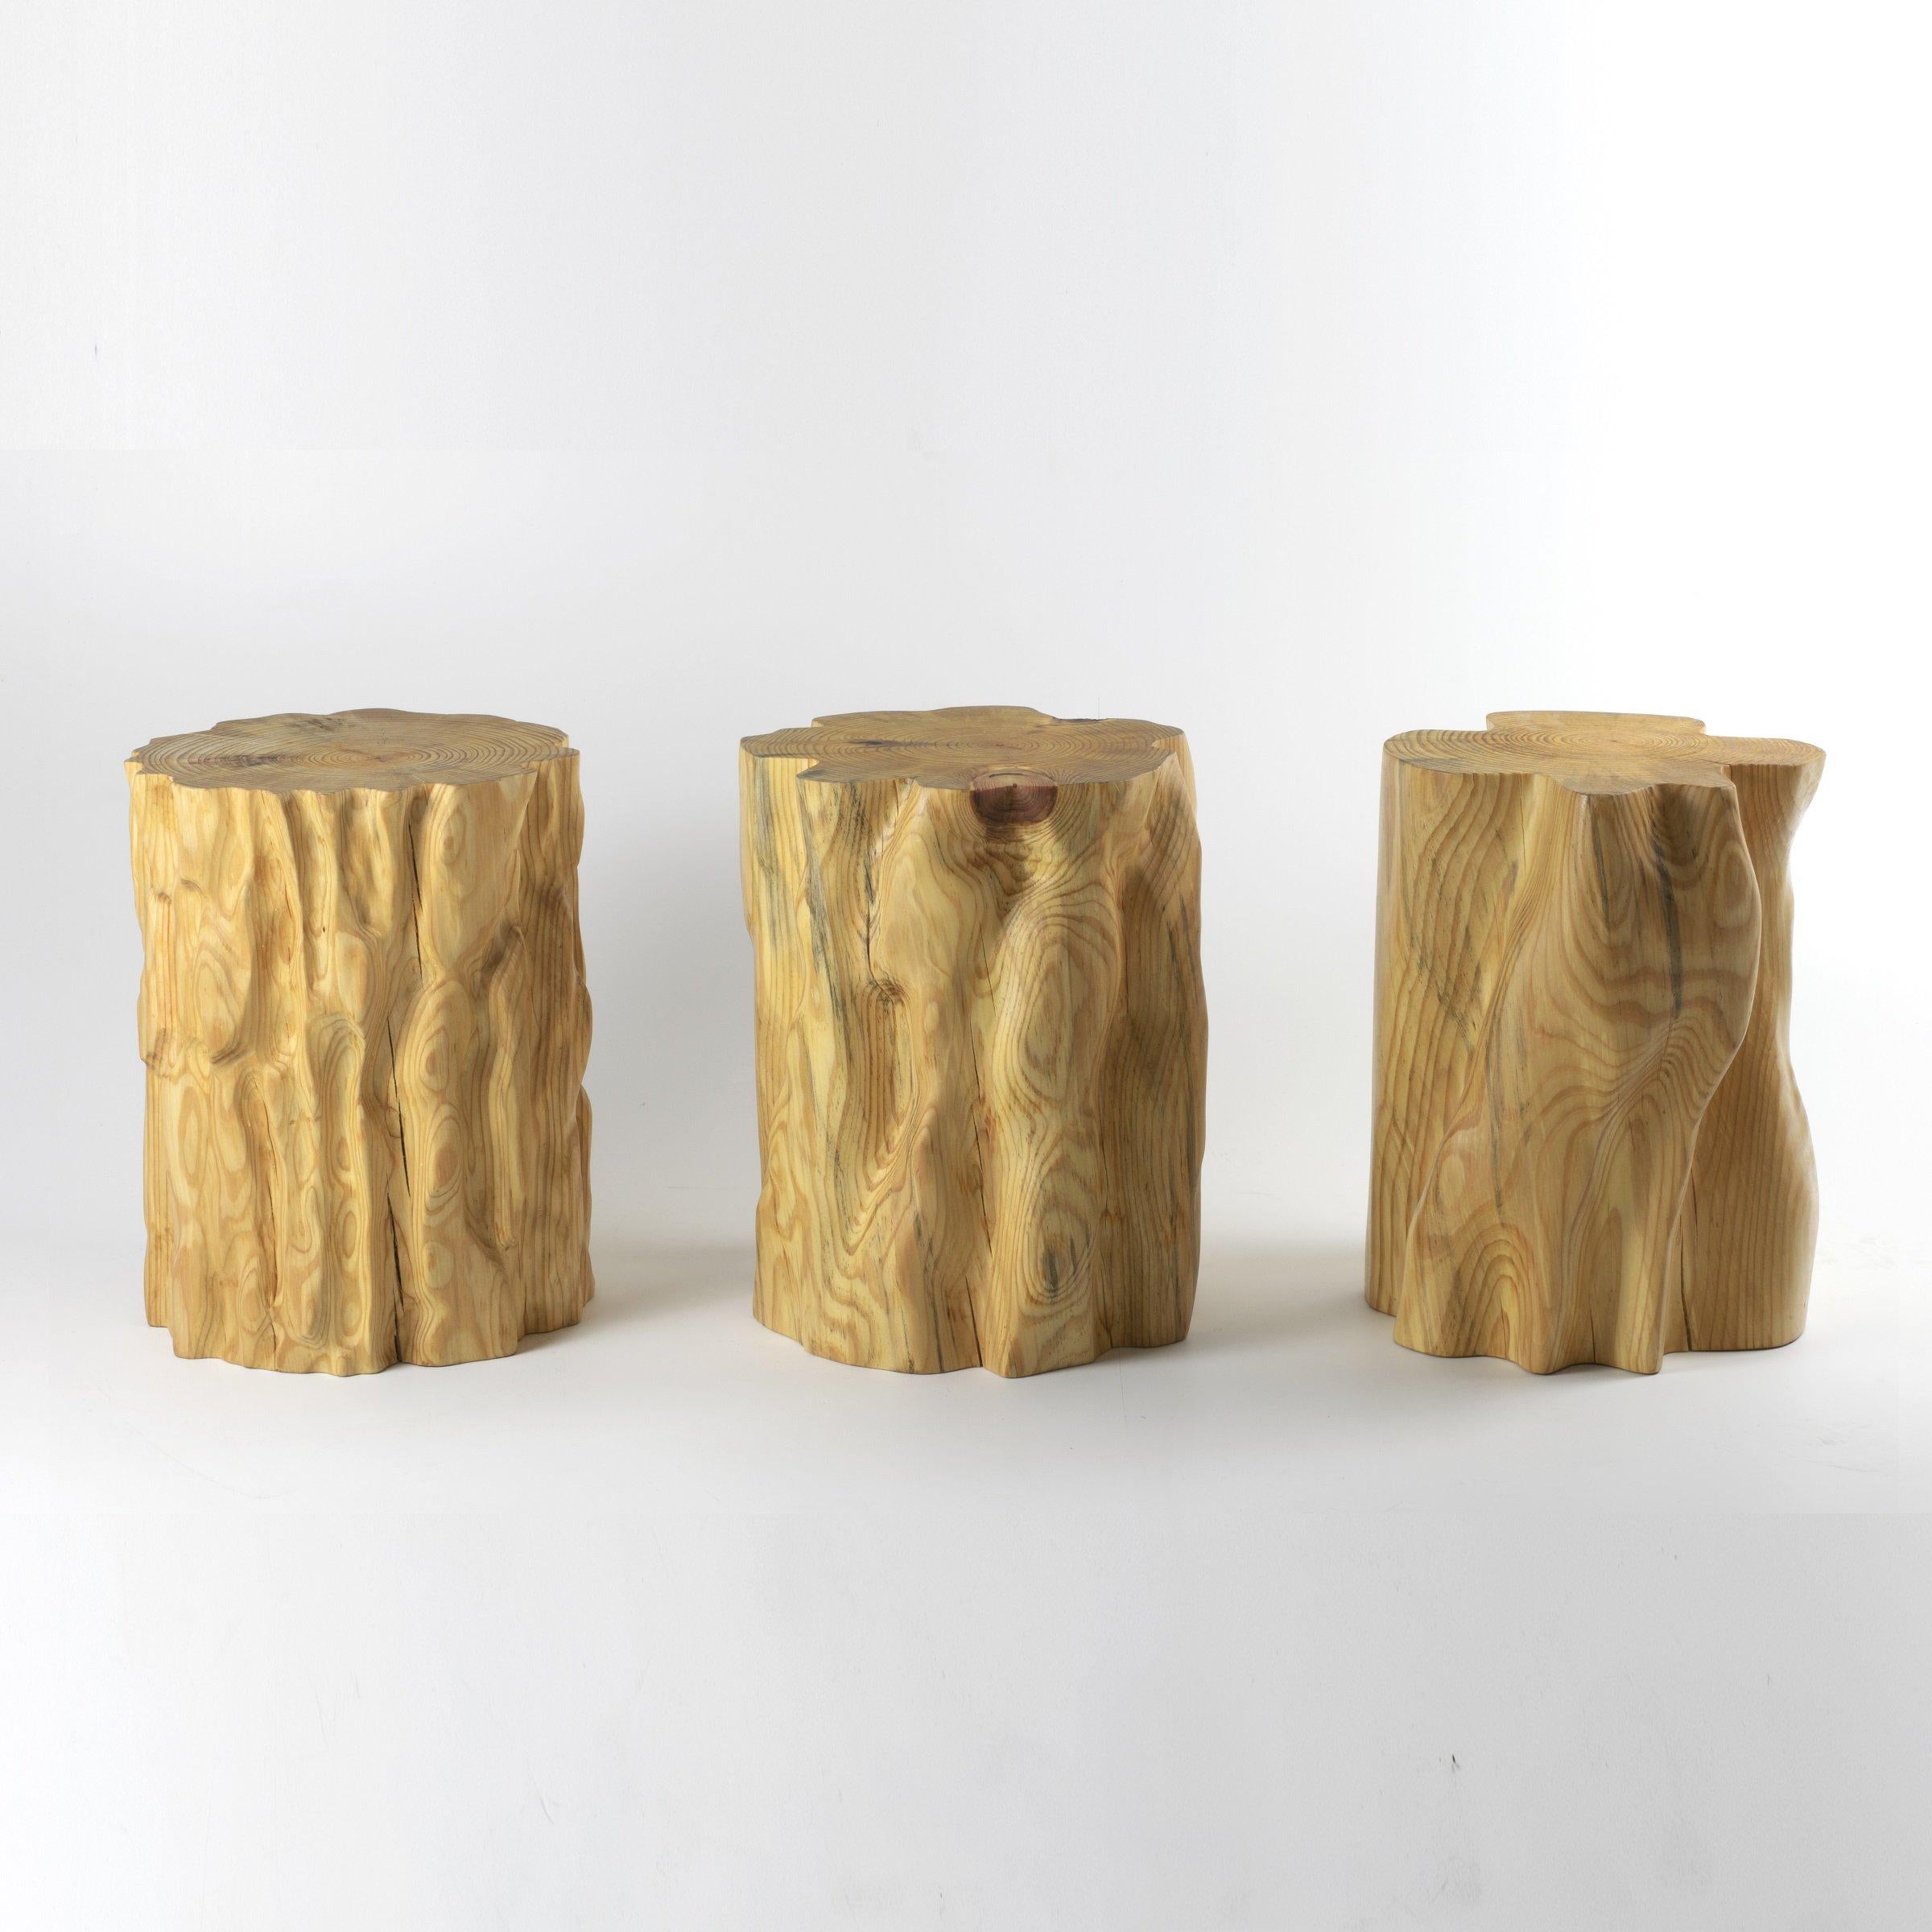 Ces tabourets en bois sont fabriqués numériquement par l'artiste Ezra Ardolino chez Timbur LLC. 

Le processus consiste à cartographier les données de déplacement de l'écorce de pin sous une forme cylindrique ; agrandissement d'une, deux et quatre